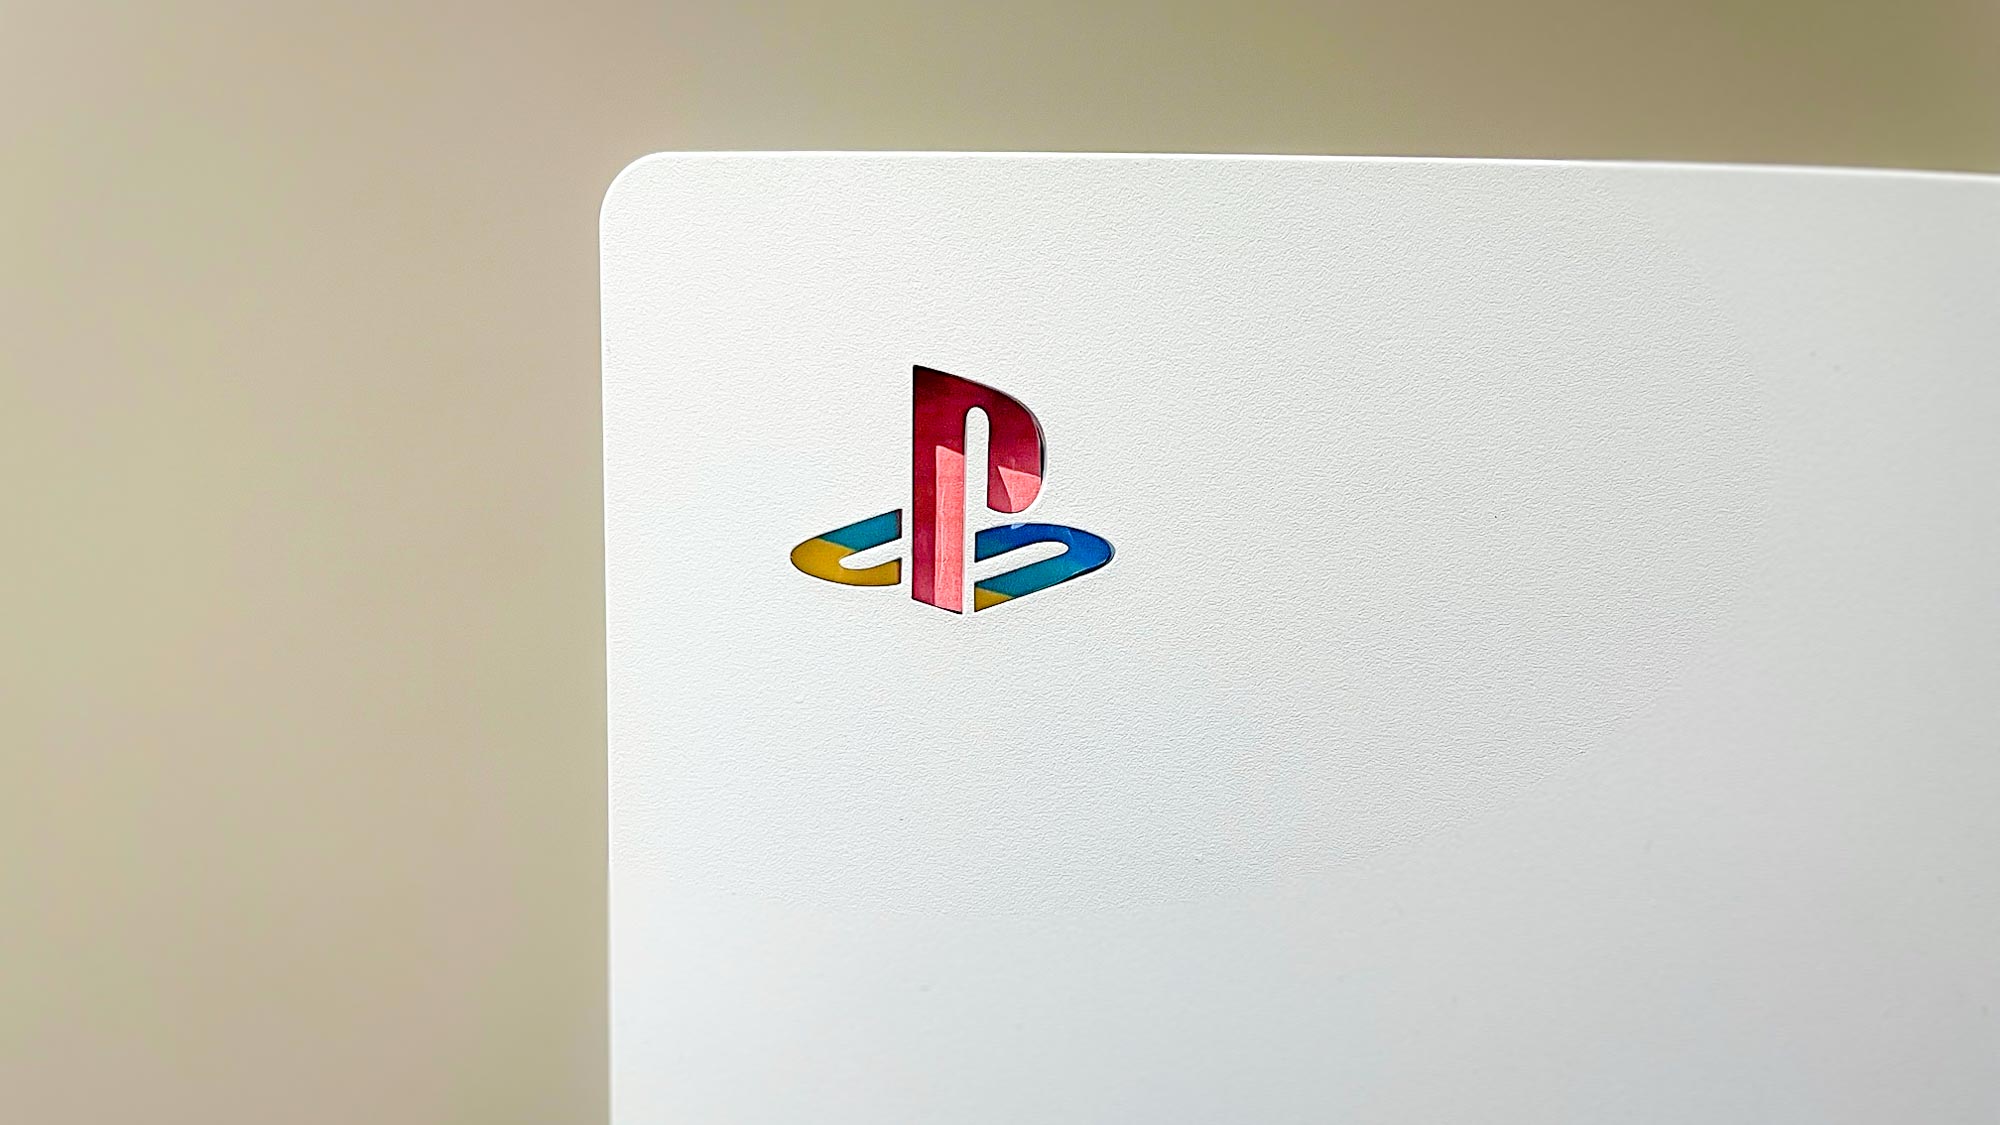 Консоль PS5 с оригинальной наклейкой с логотипом PlayStation